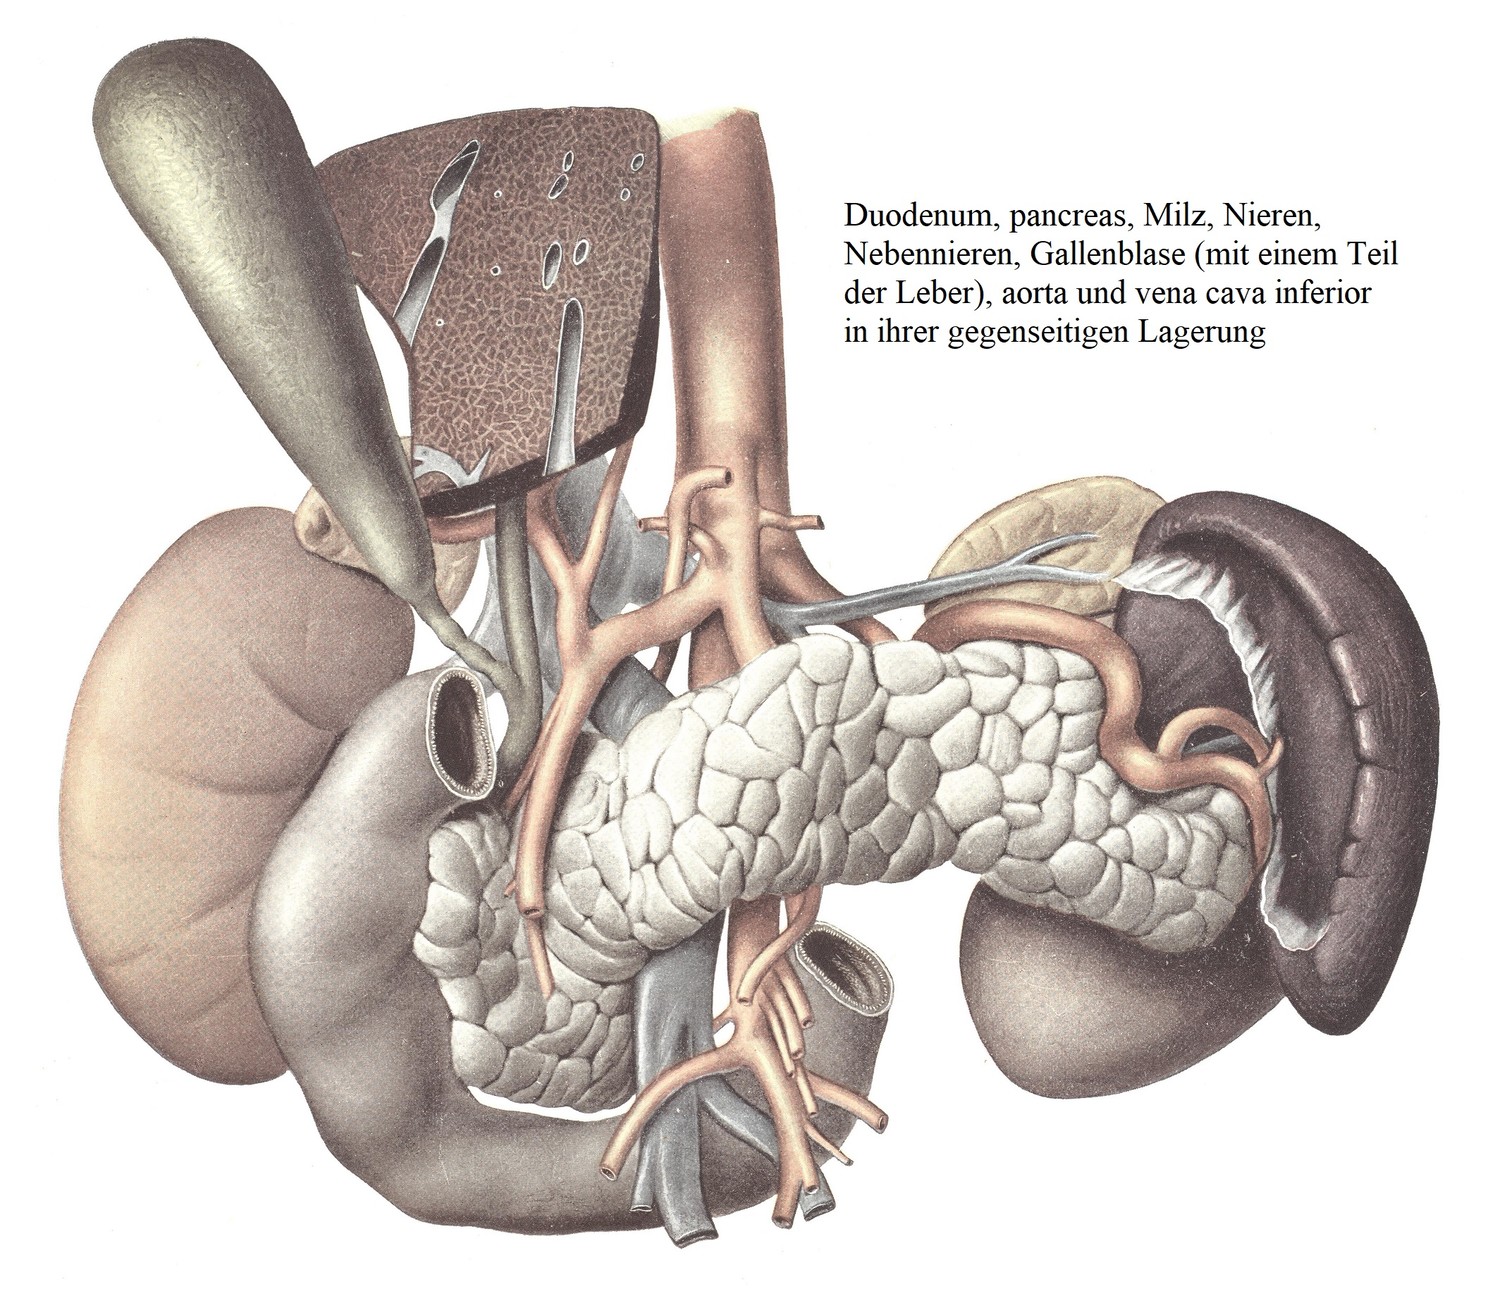 Двенадцатиперстная кишка, поджелудочная железа, селезенка, почки, надпочечники, желчный пузырь (с частью печени), аорта и нижняя полая вена в их взаимном расположении